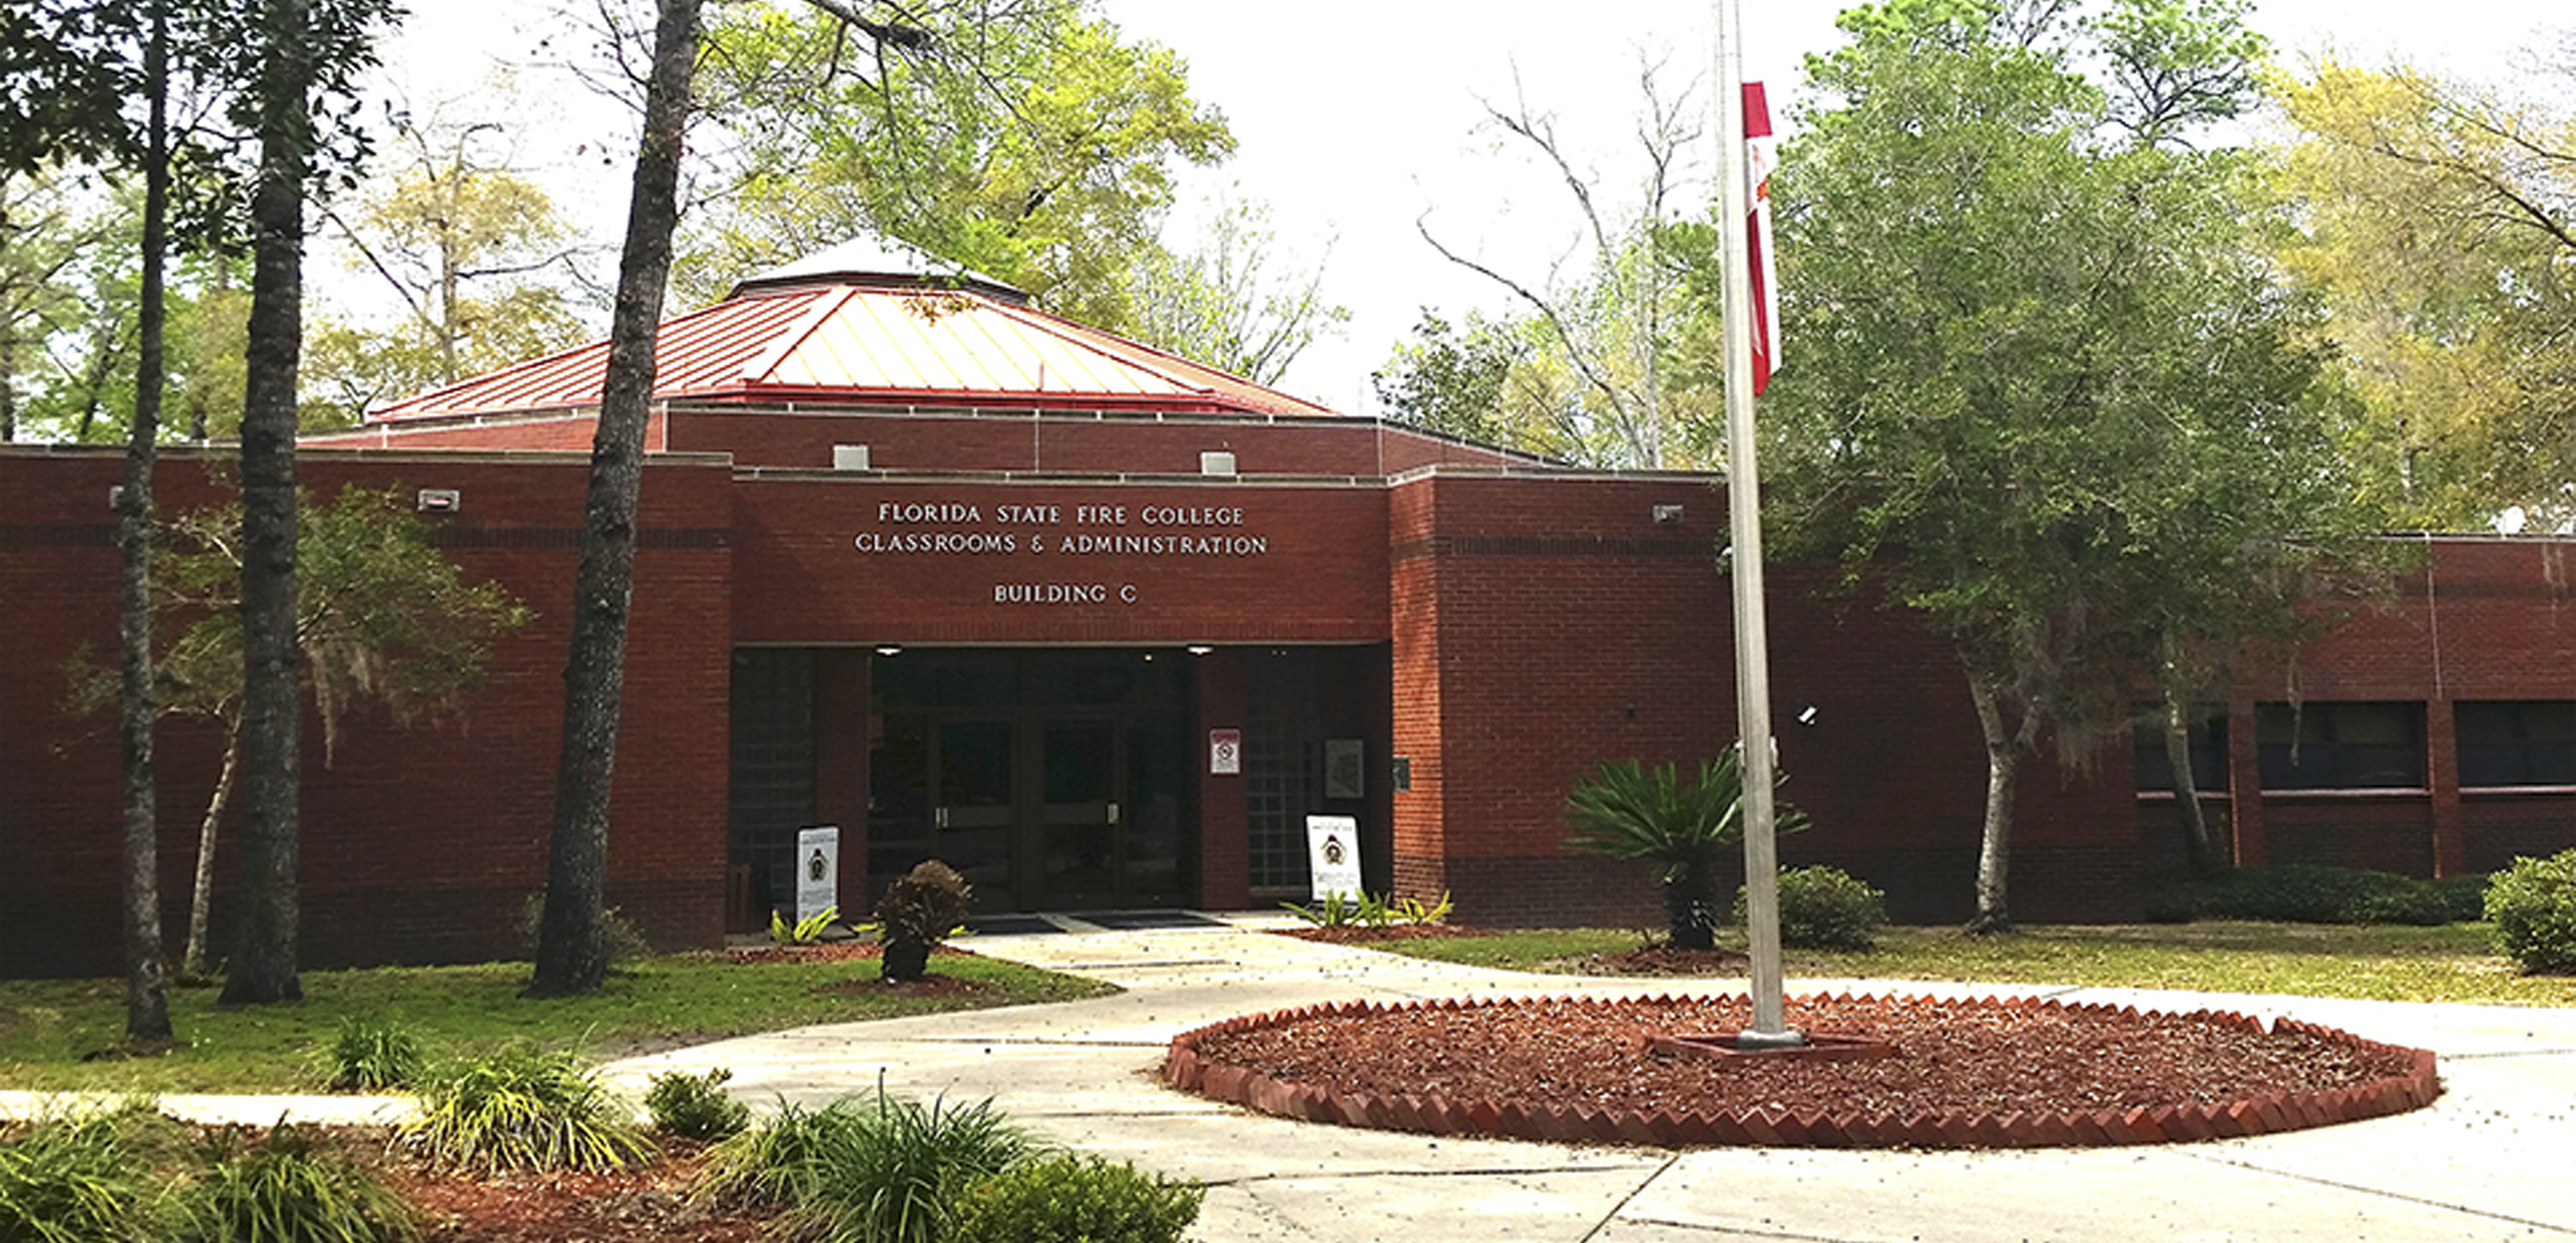 Edificio de la Administración de la Escuela de Bomberos del Estado de la Florida